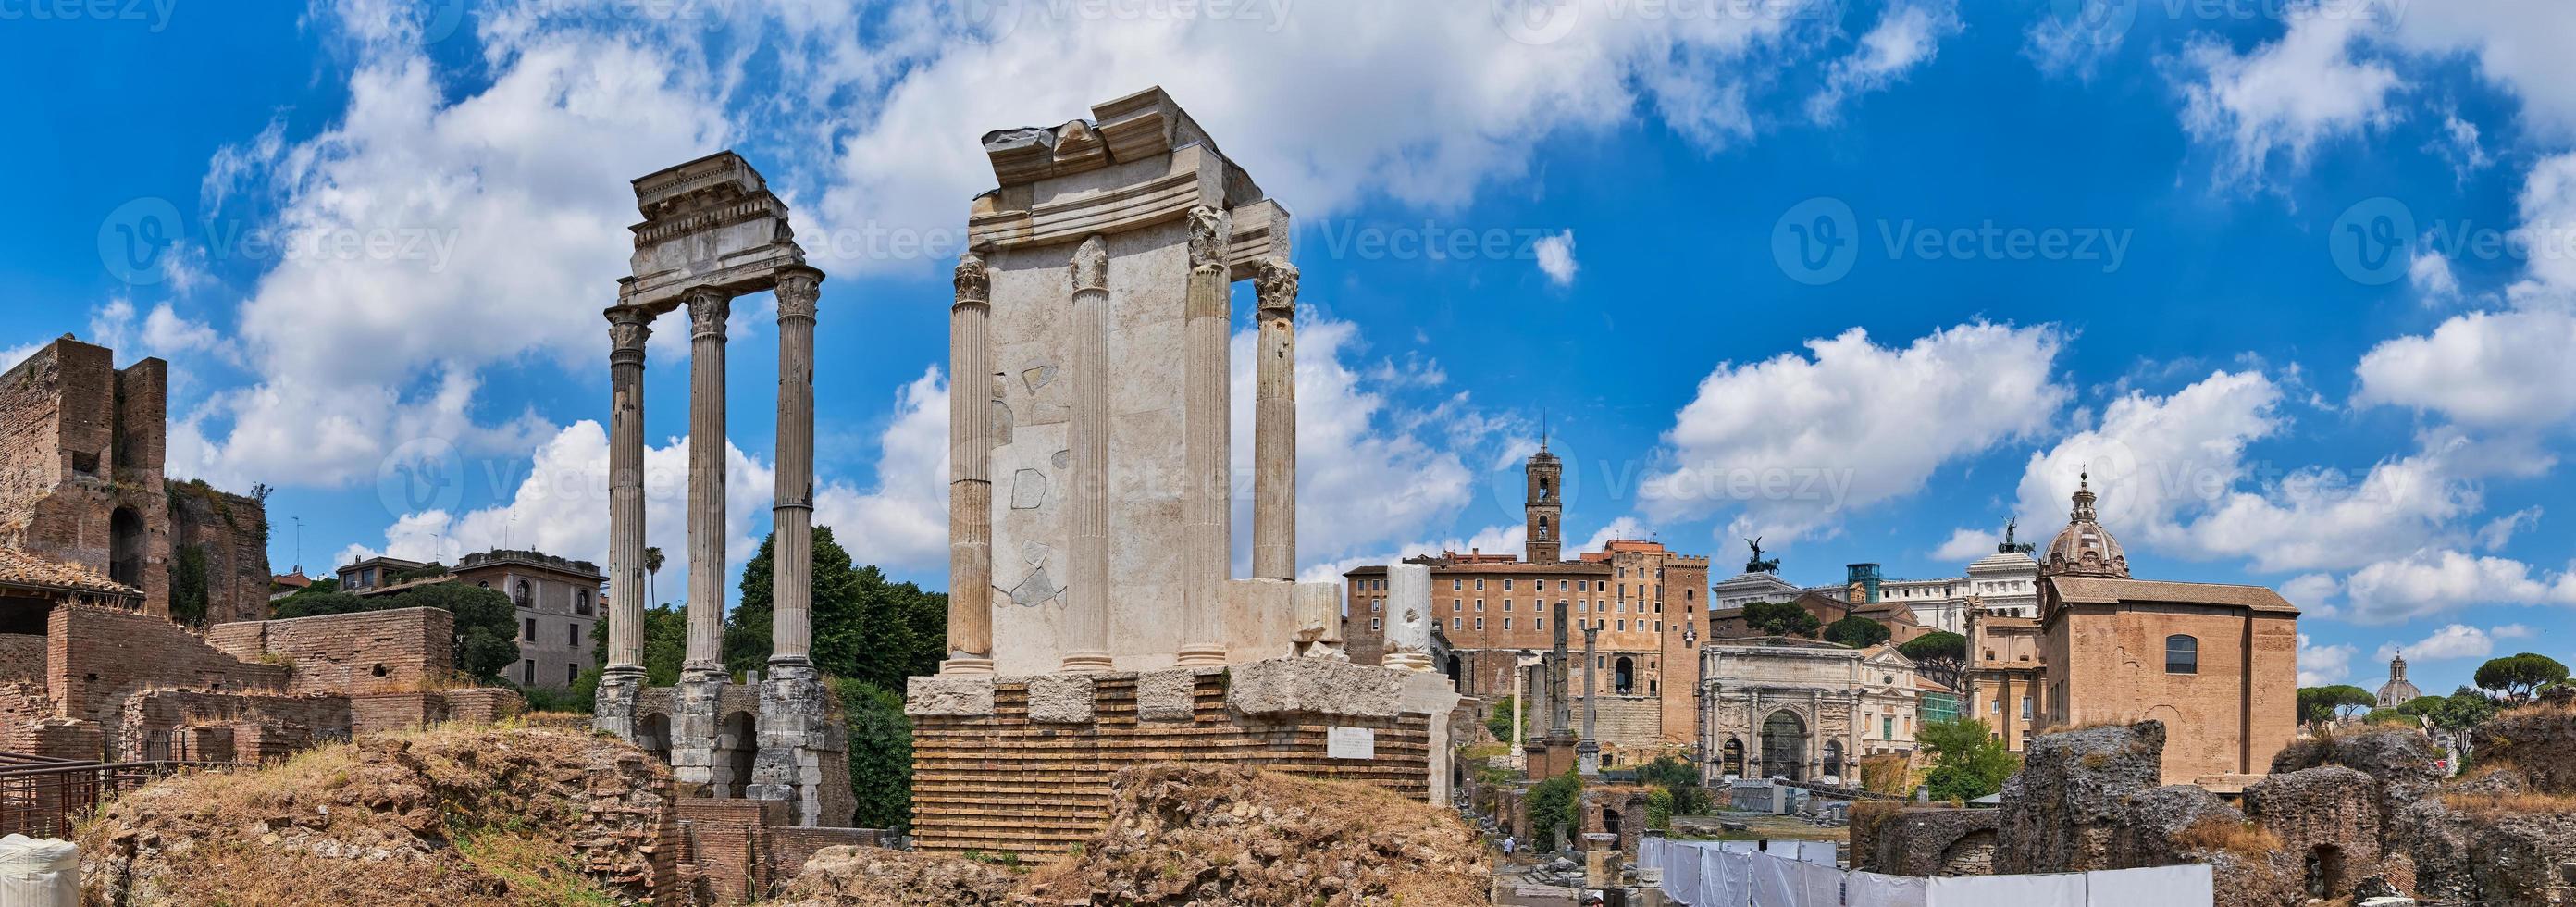 panoramablick kaiserforen des antiken roms foto